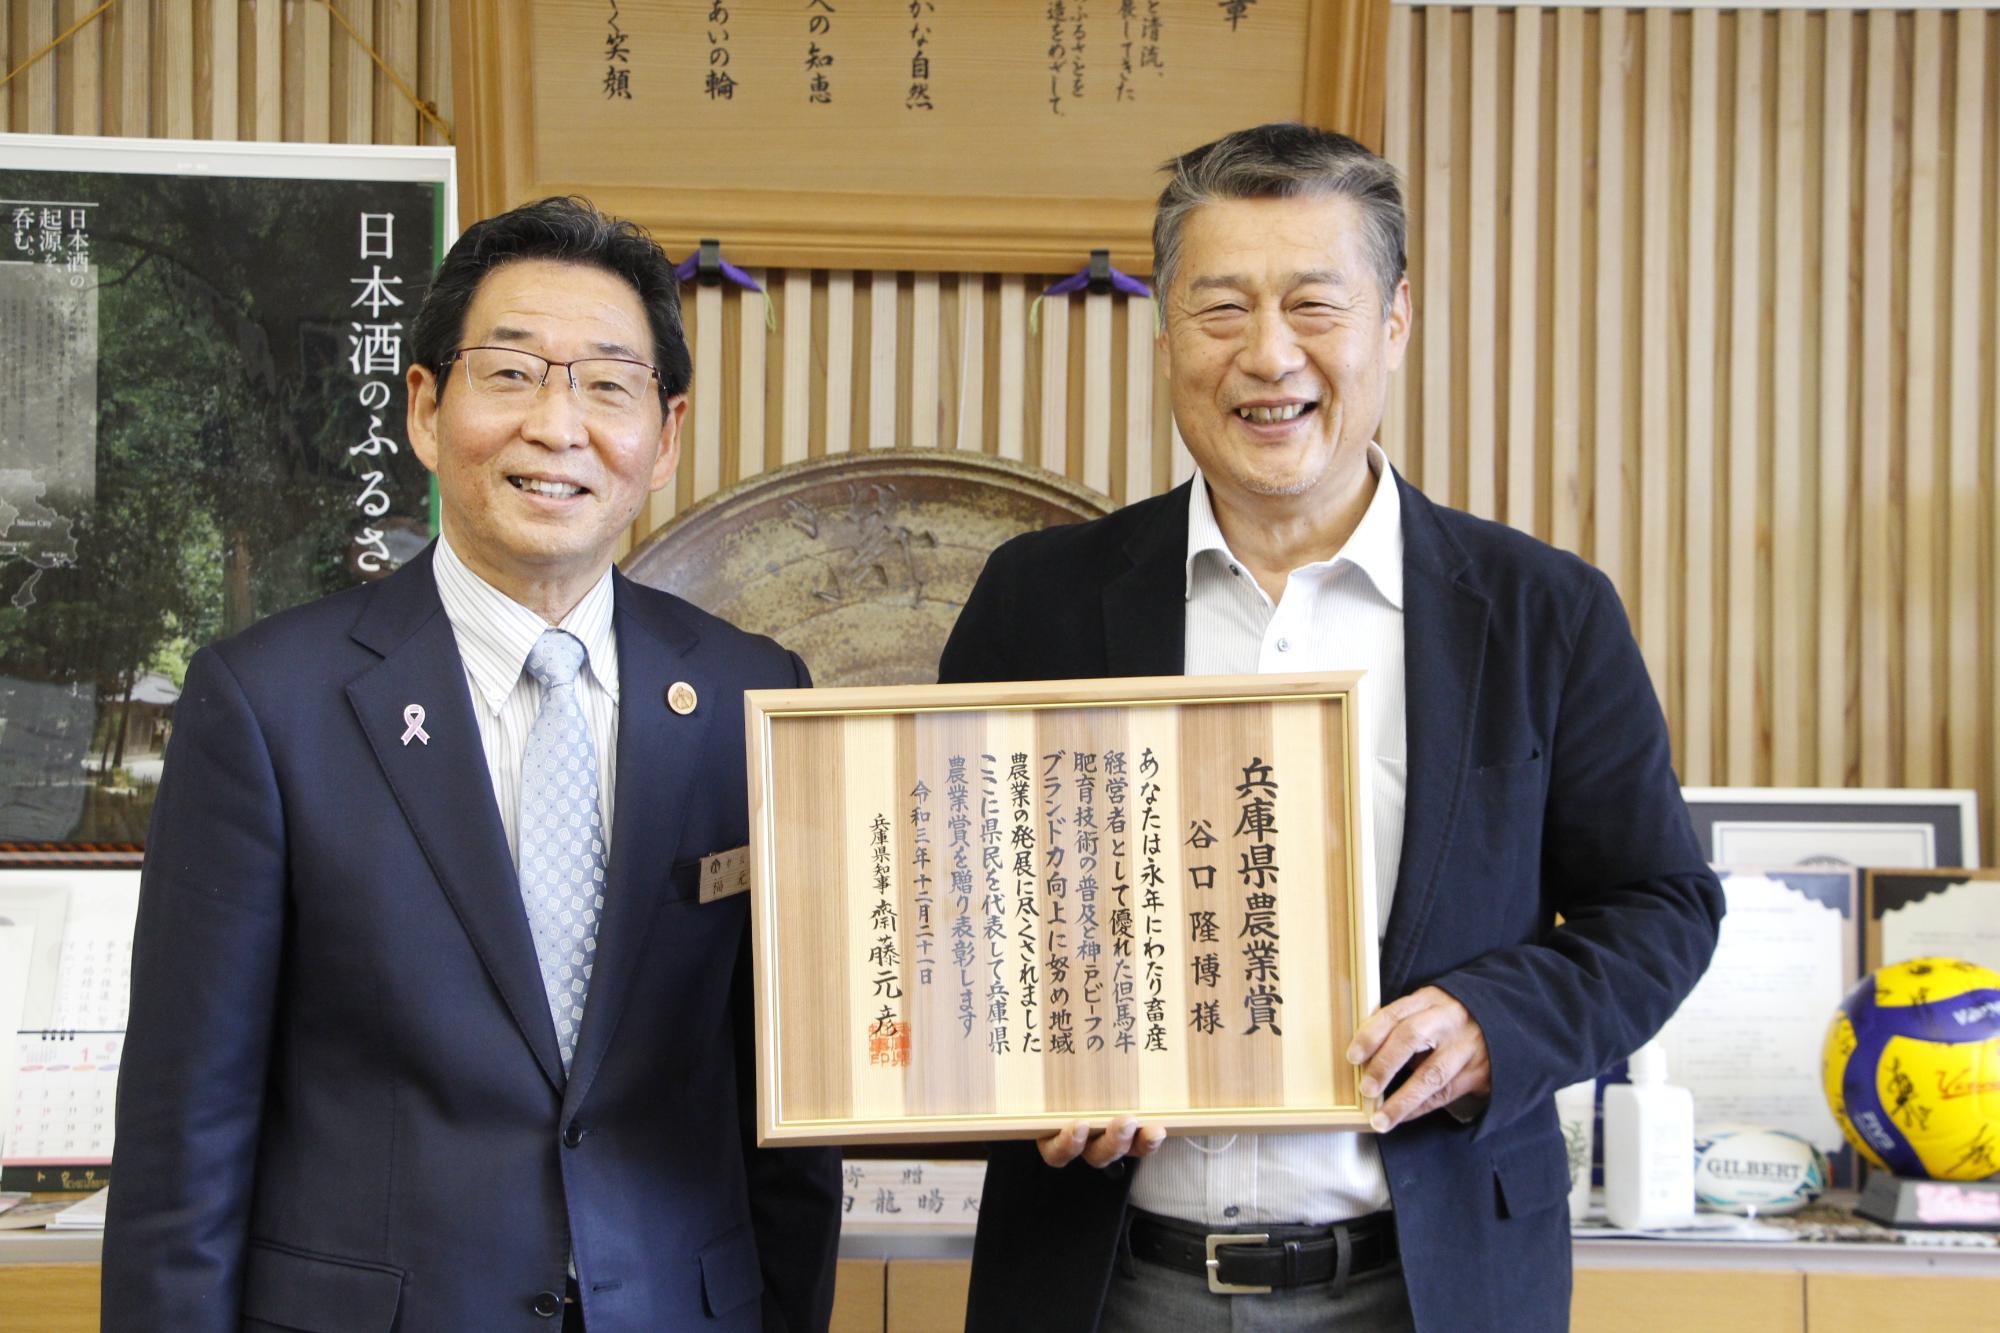 左は福元市長、右は賞状を手にした谷口隆博さんの写真